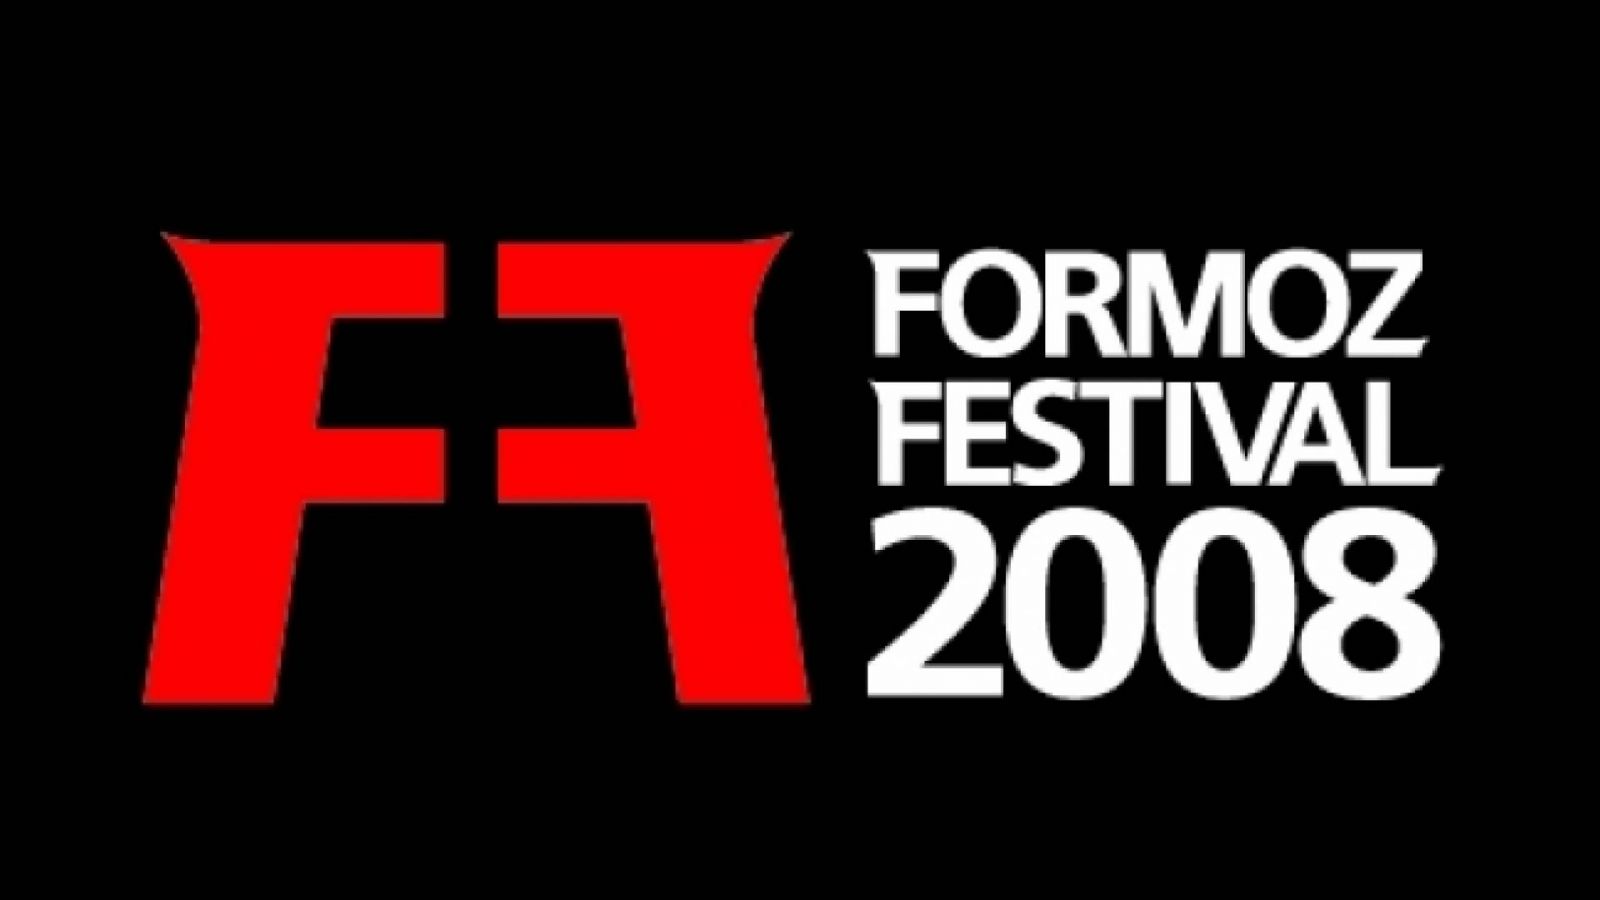 FORMOZ Festival - część I © Formoz Festival